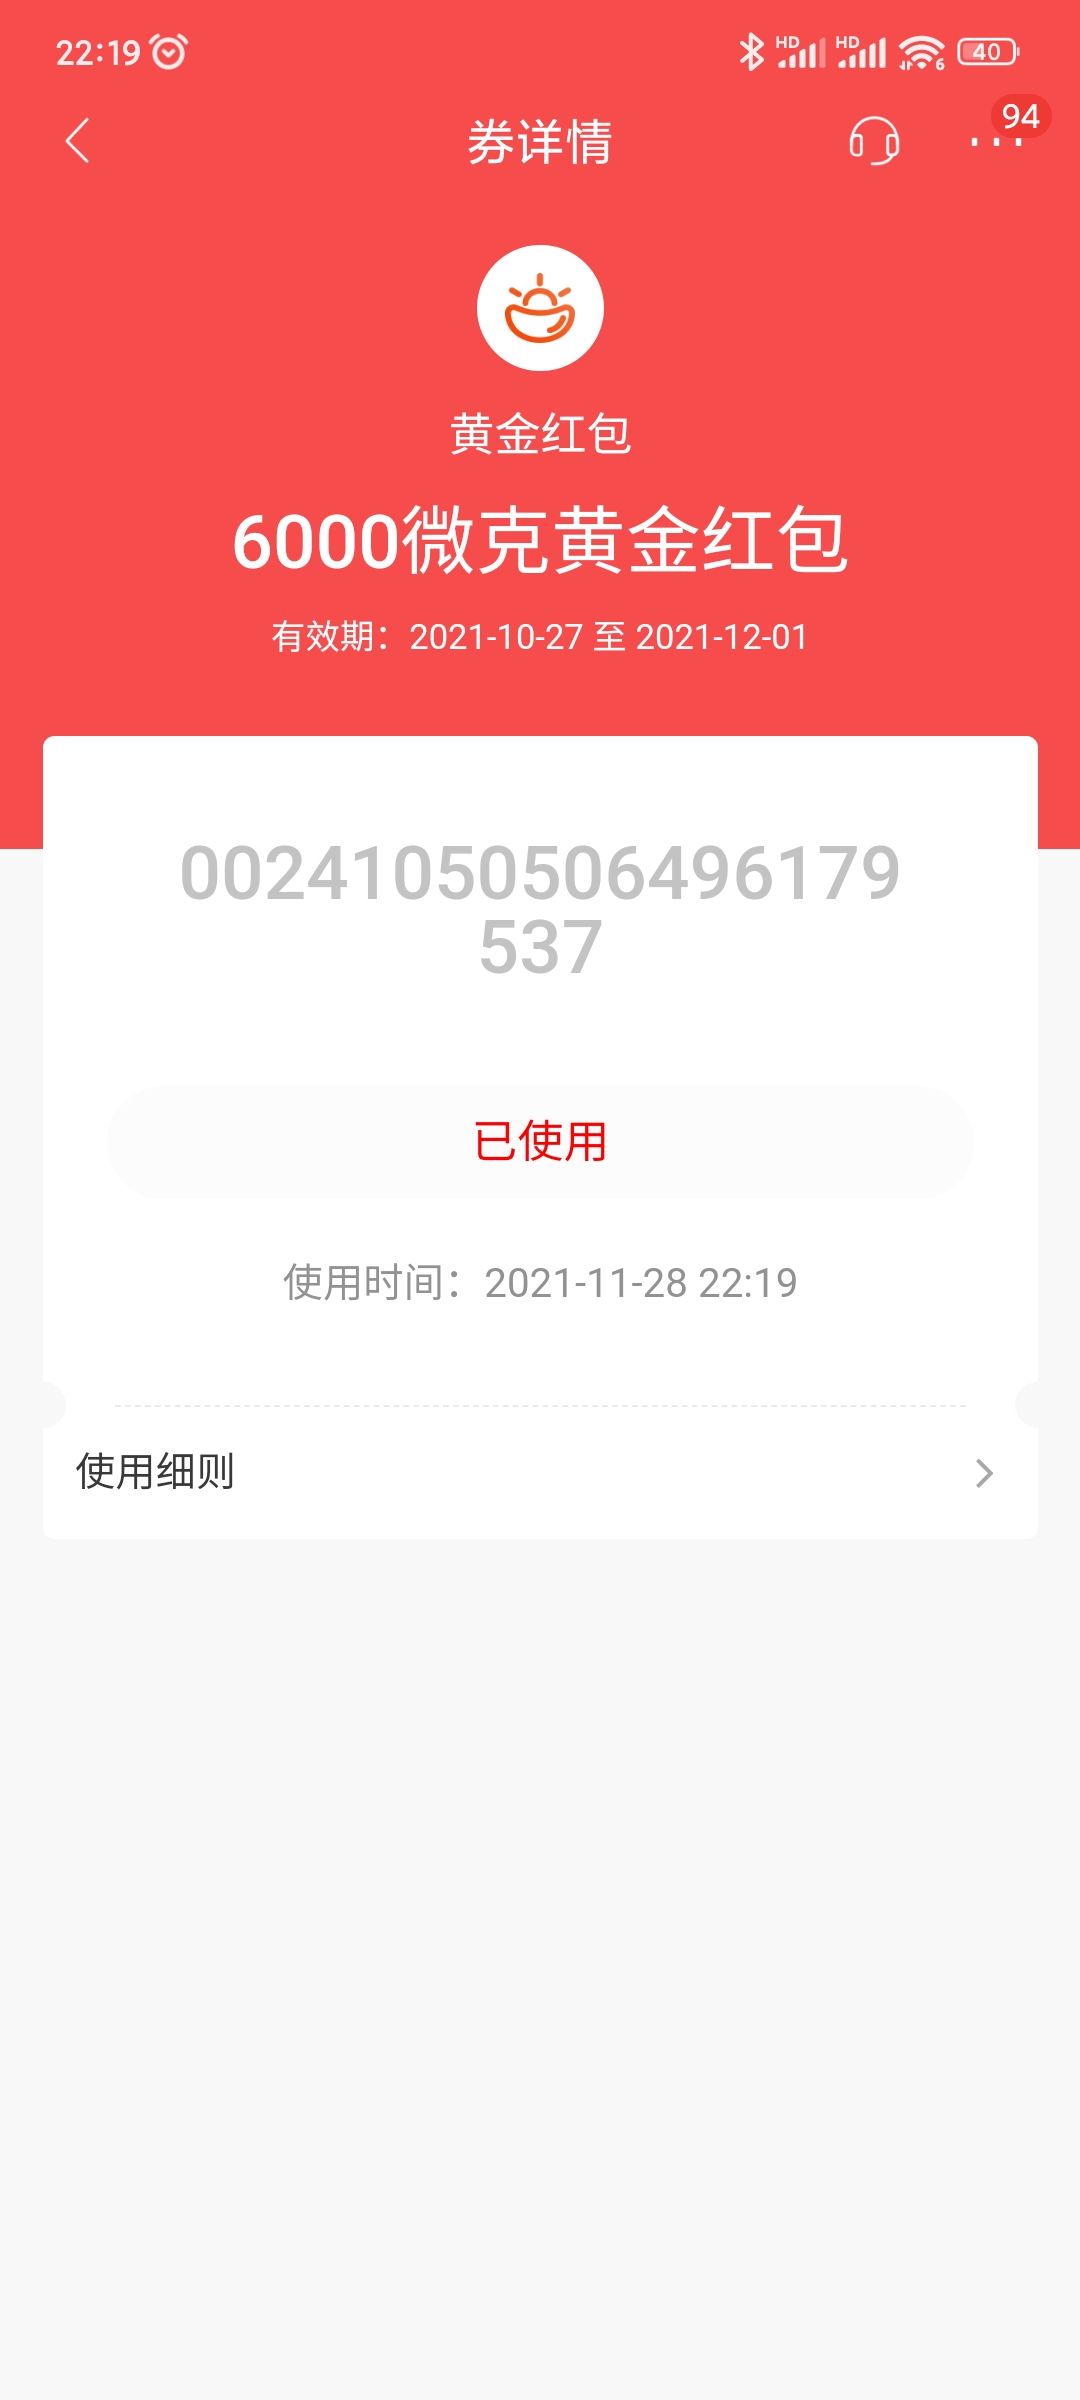 6000+6000-惠小助(52huixz.com)